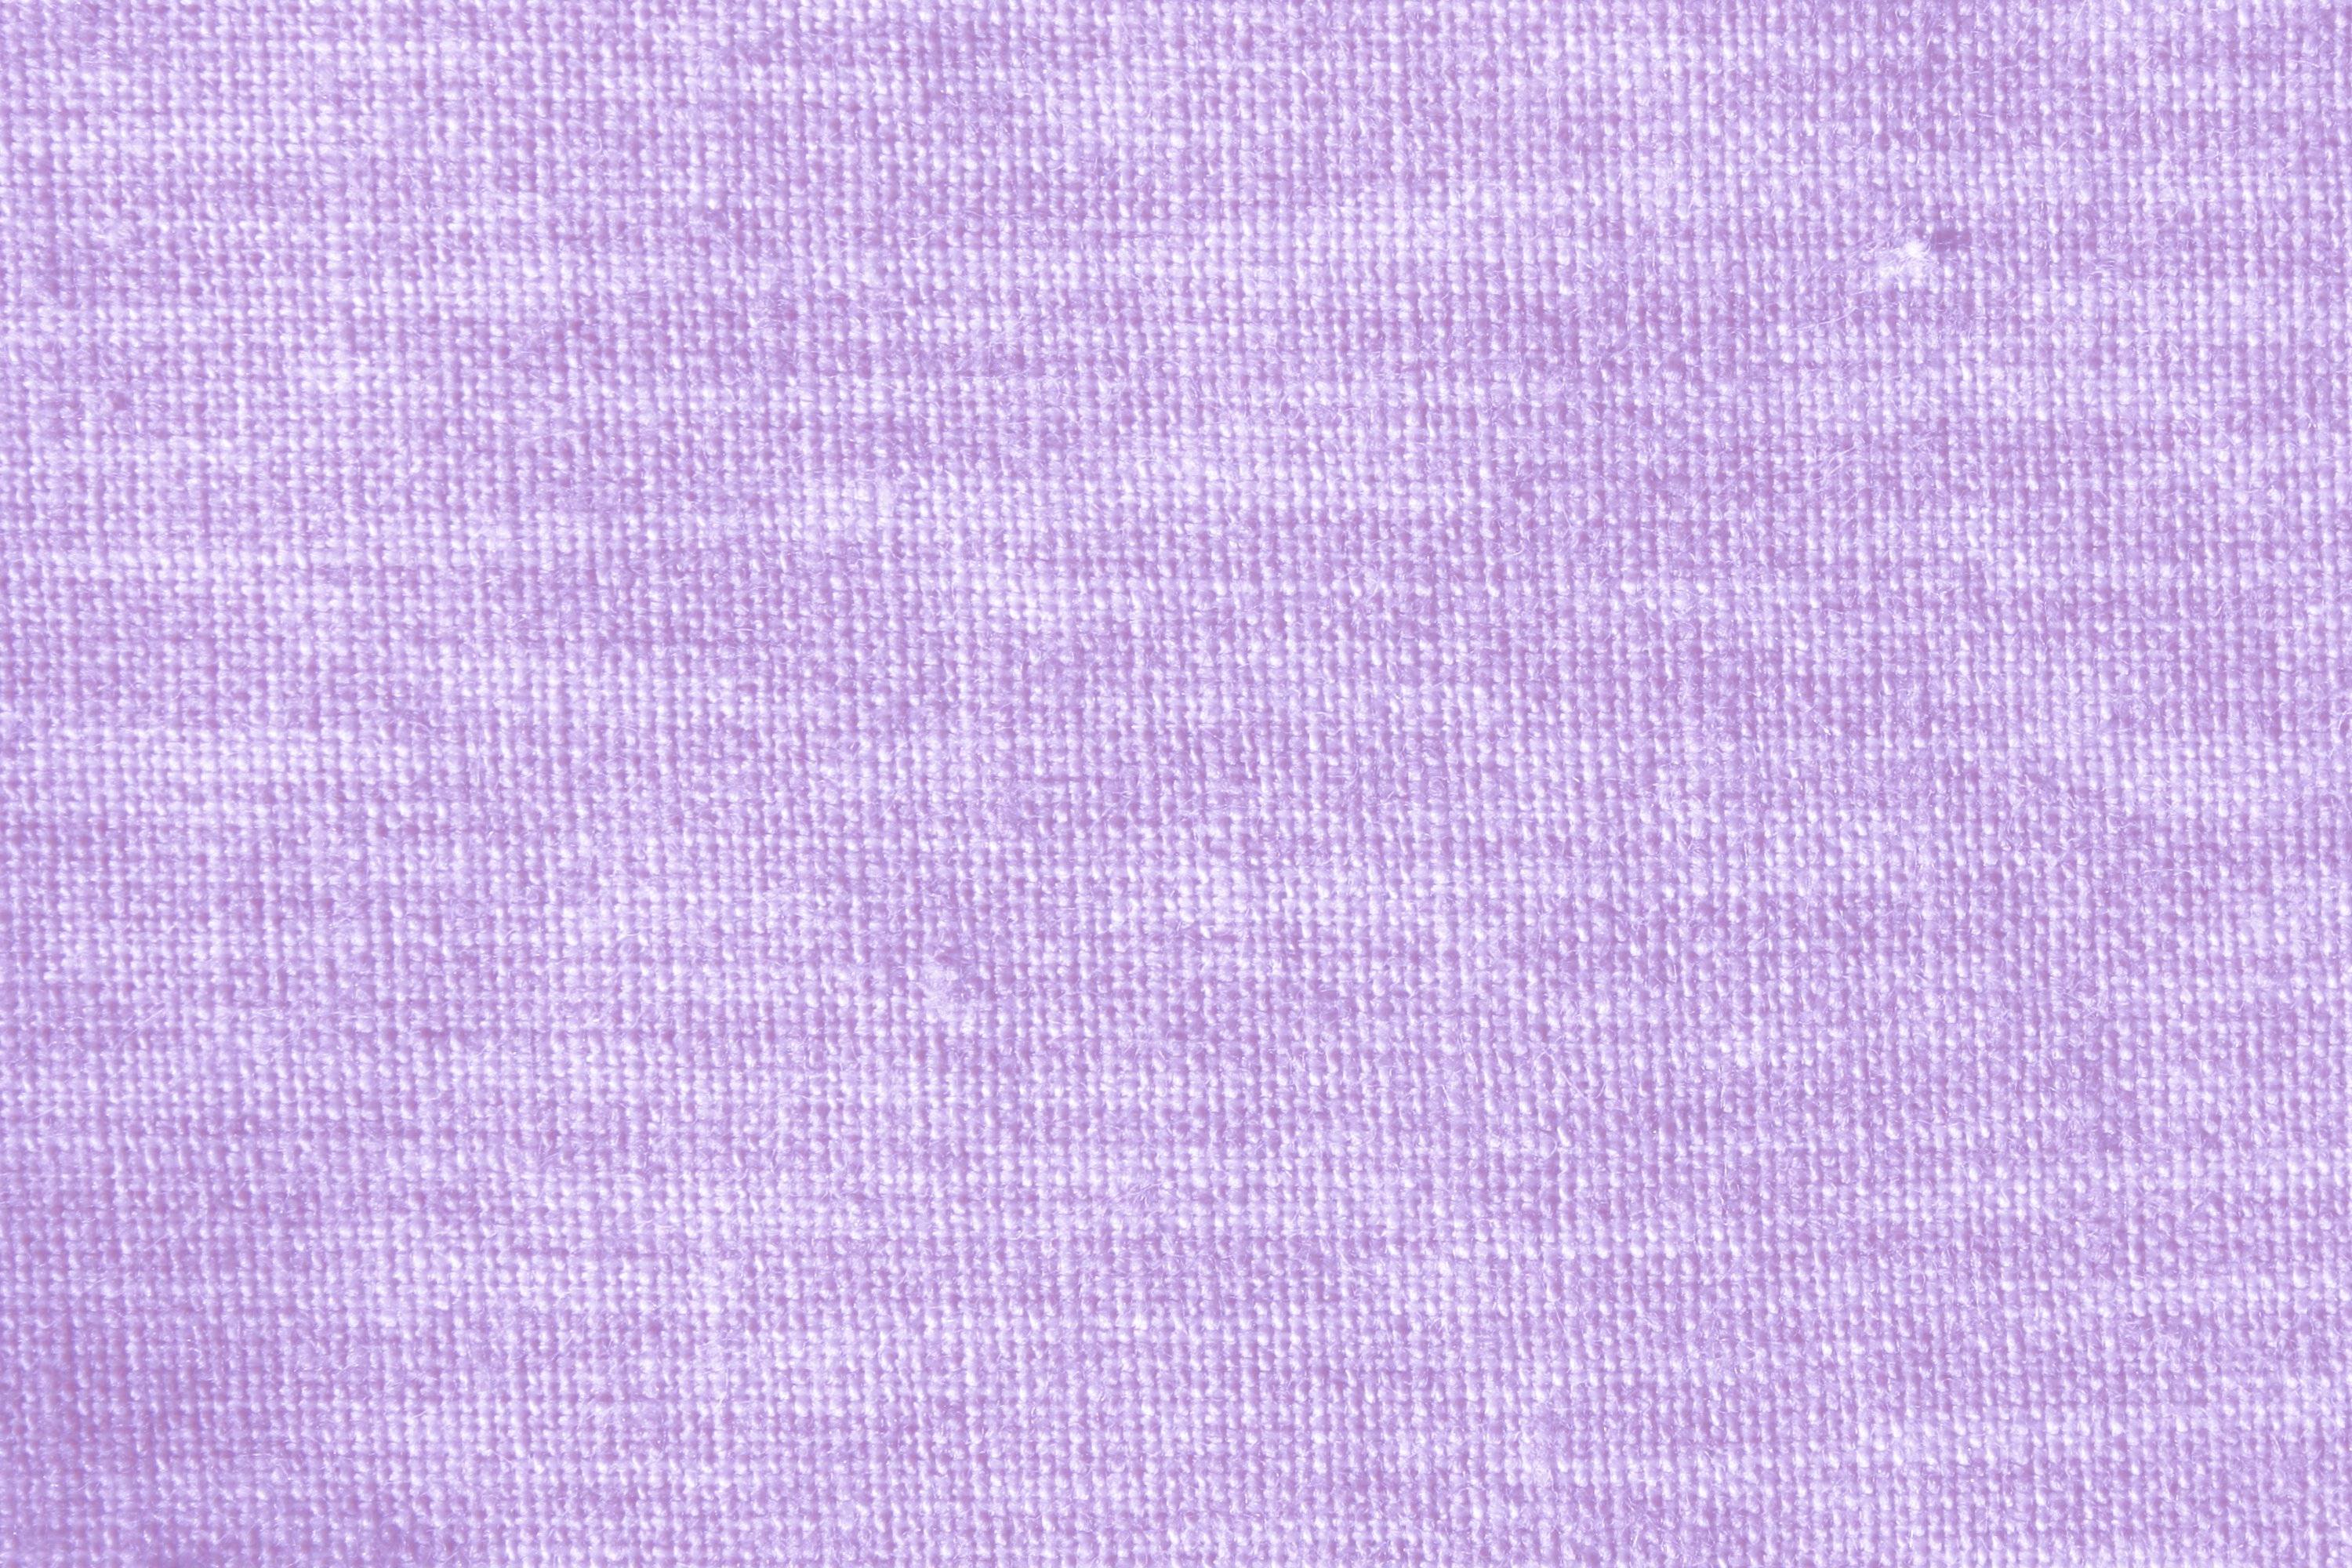 Wallpaper For > Light Purple Tumblr Background